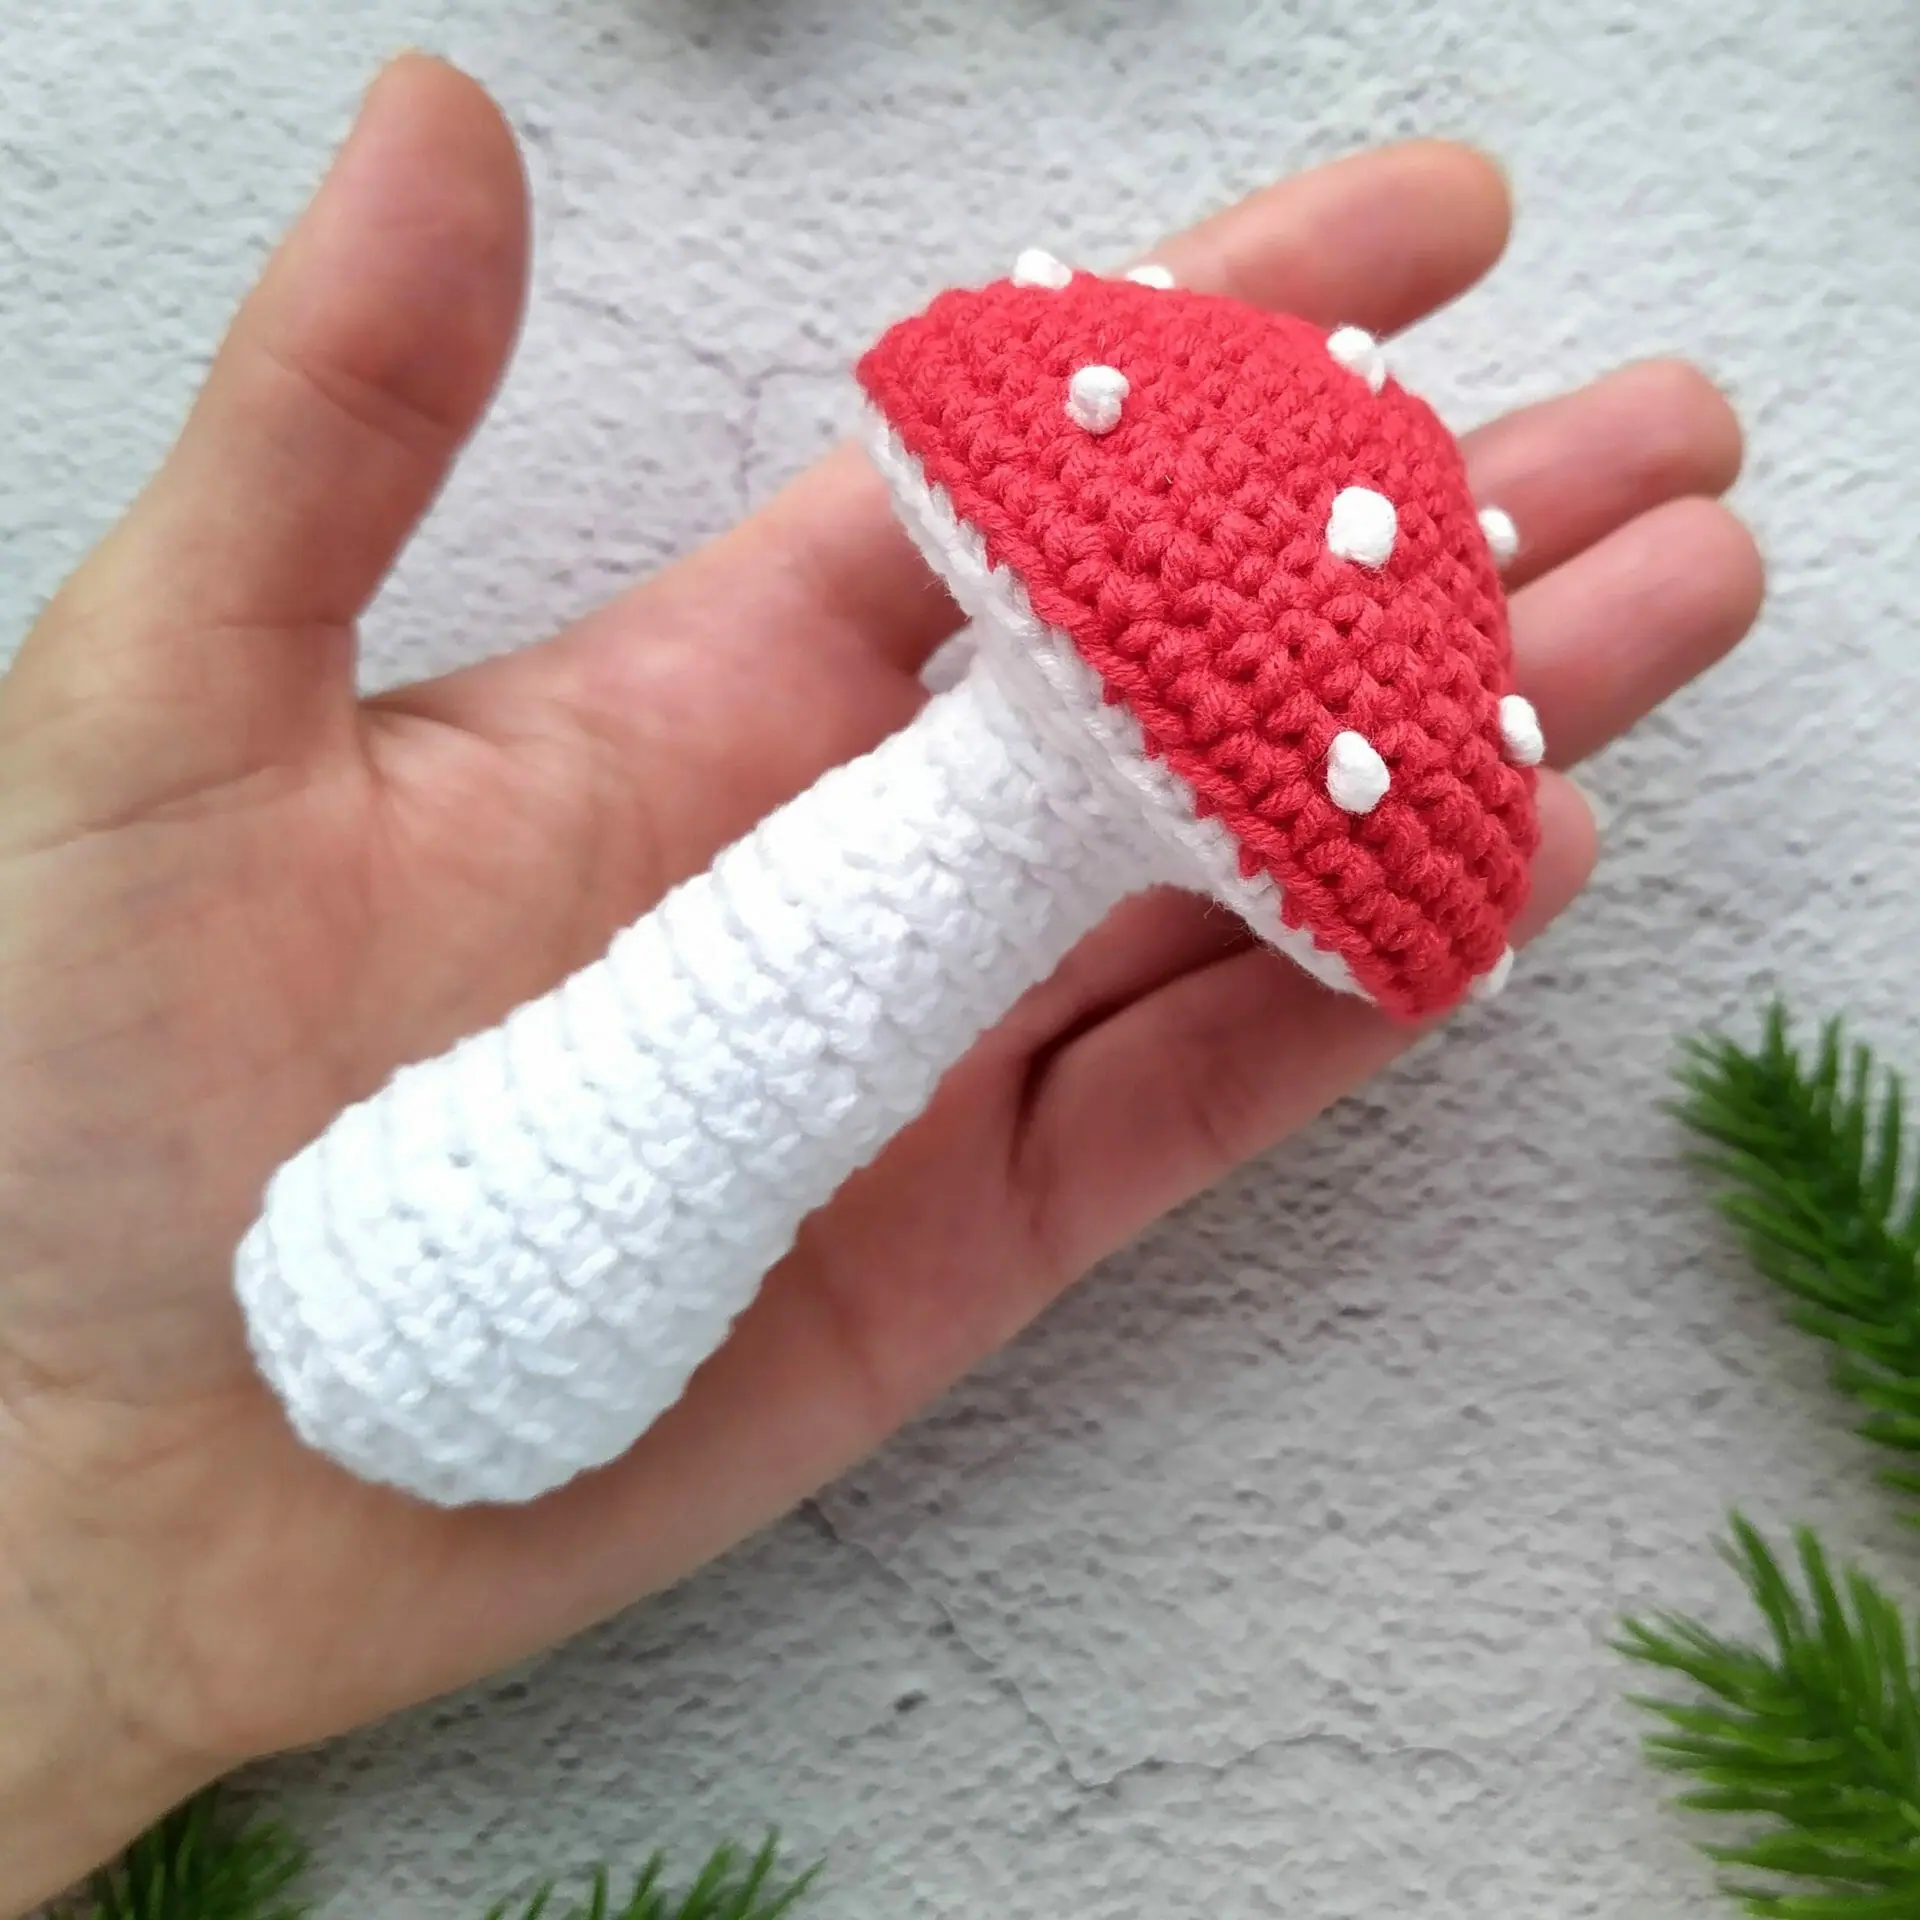 Mushroom Crochet Kit Amigurumi Mushroom, Easy Crochet Starter Kit,  Amigurumi Kit, DIY Craft Kit Gift, Crochet Mushroom Kit 